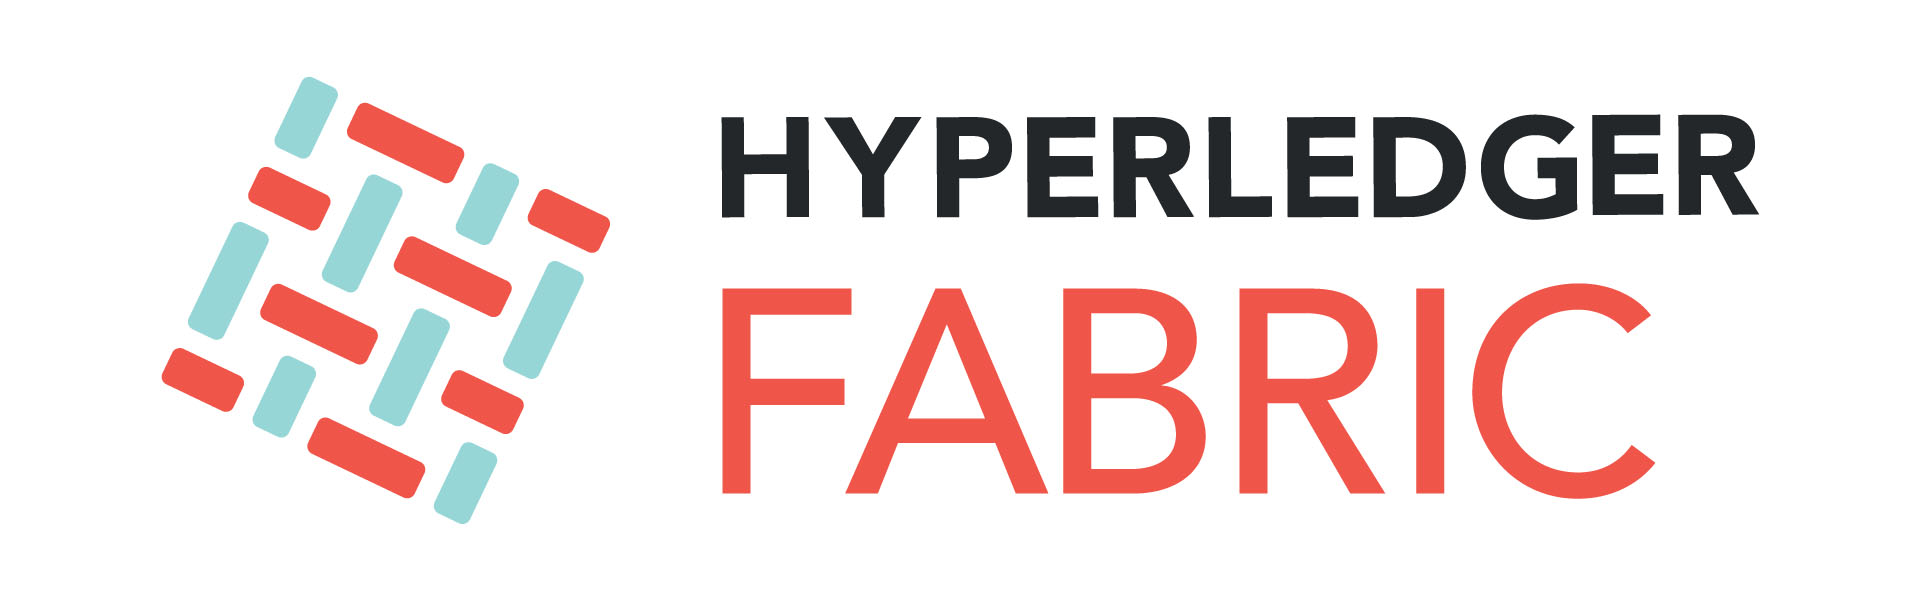 Hyperledger Fabric - HLF - фреймворк для разработки приложений и специализированных бизнес-решений на основе блокчейна